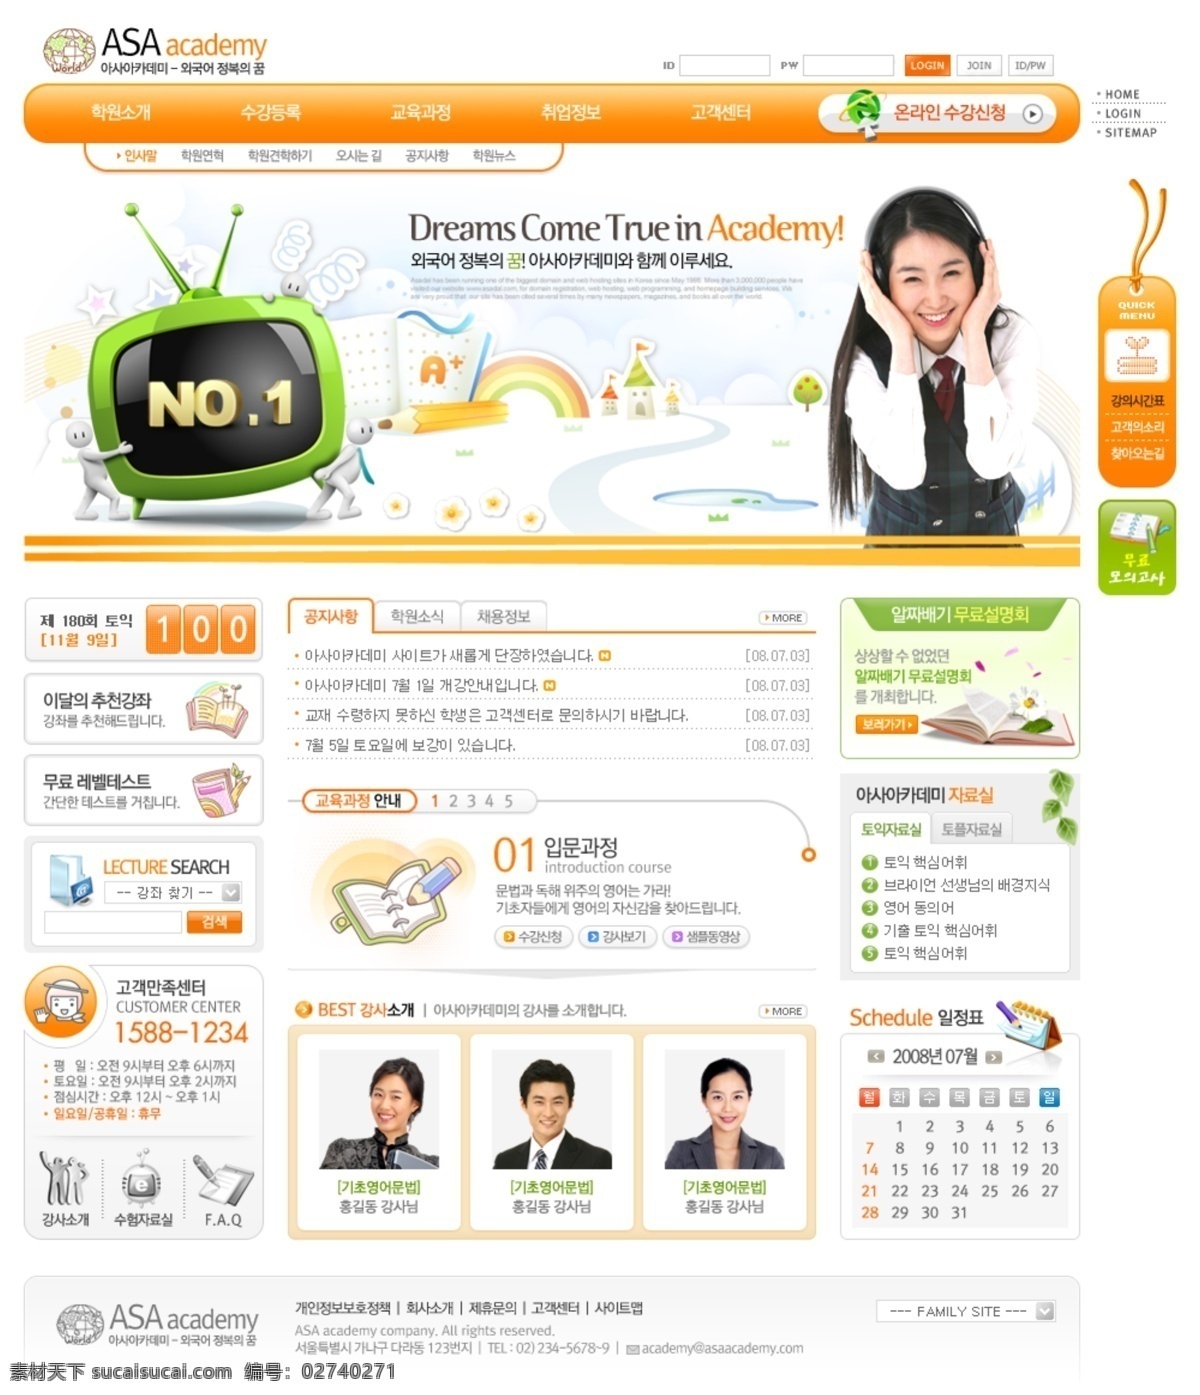 橙黄色 视听 培训教育 网页模板 韩国风格 橙黄色色调 网页素材